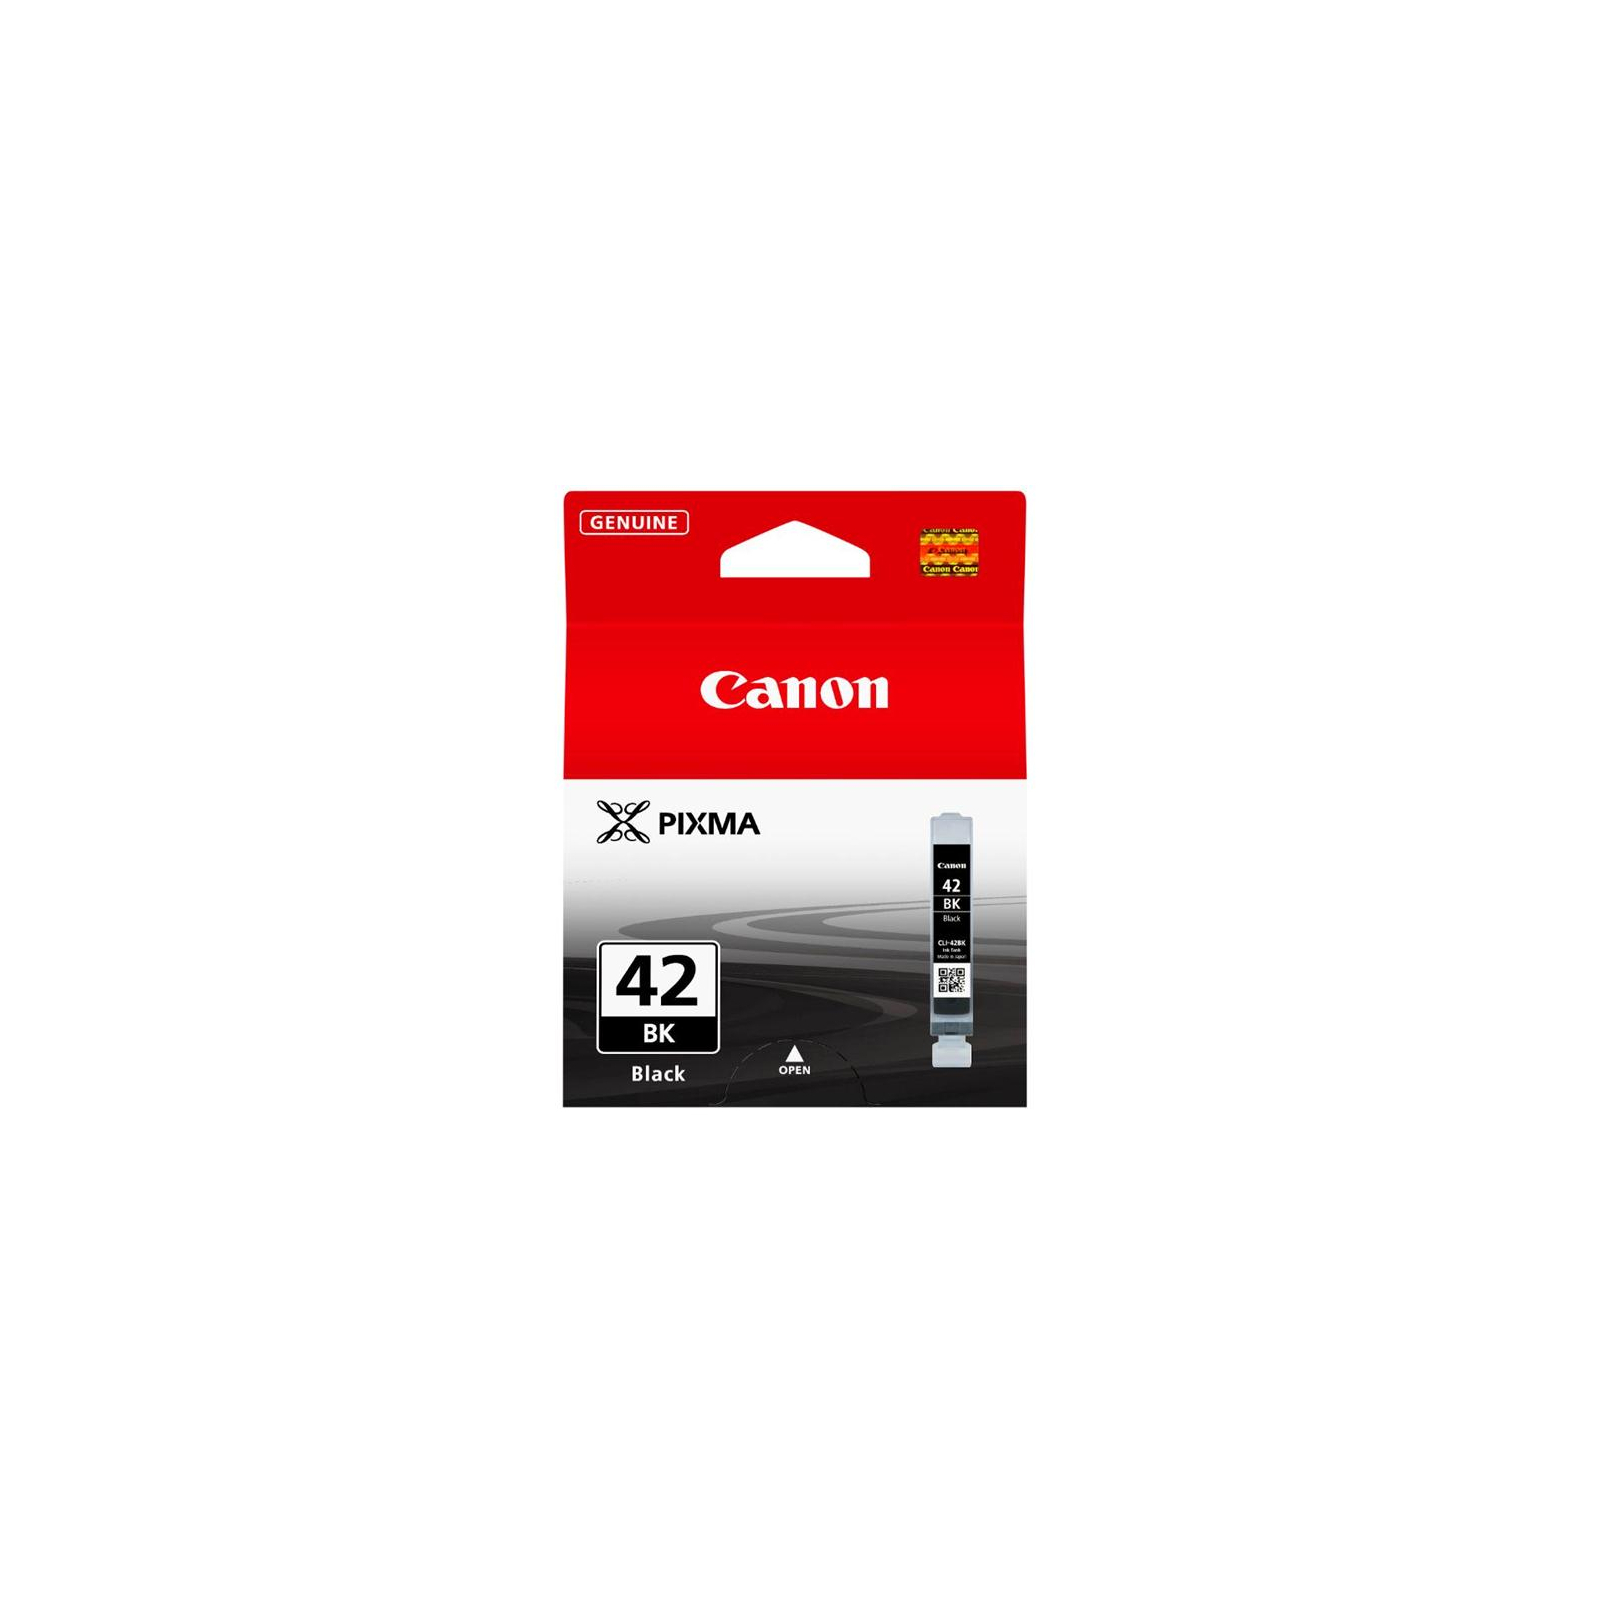 Картридж Canon CLI-42 Cyan для PIXMA PRO-100 (6385B001) зображення 2